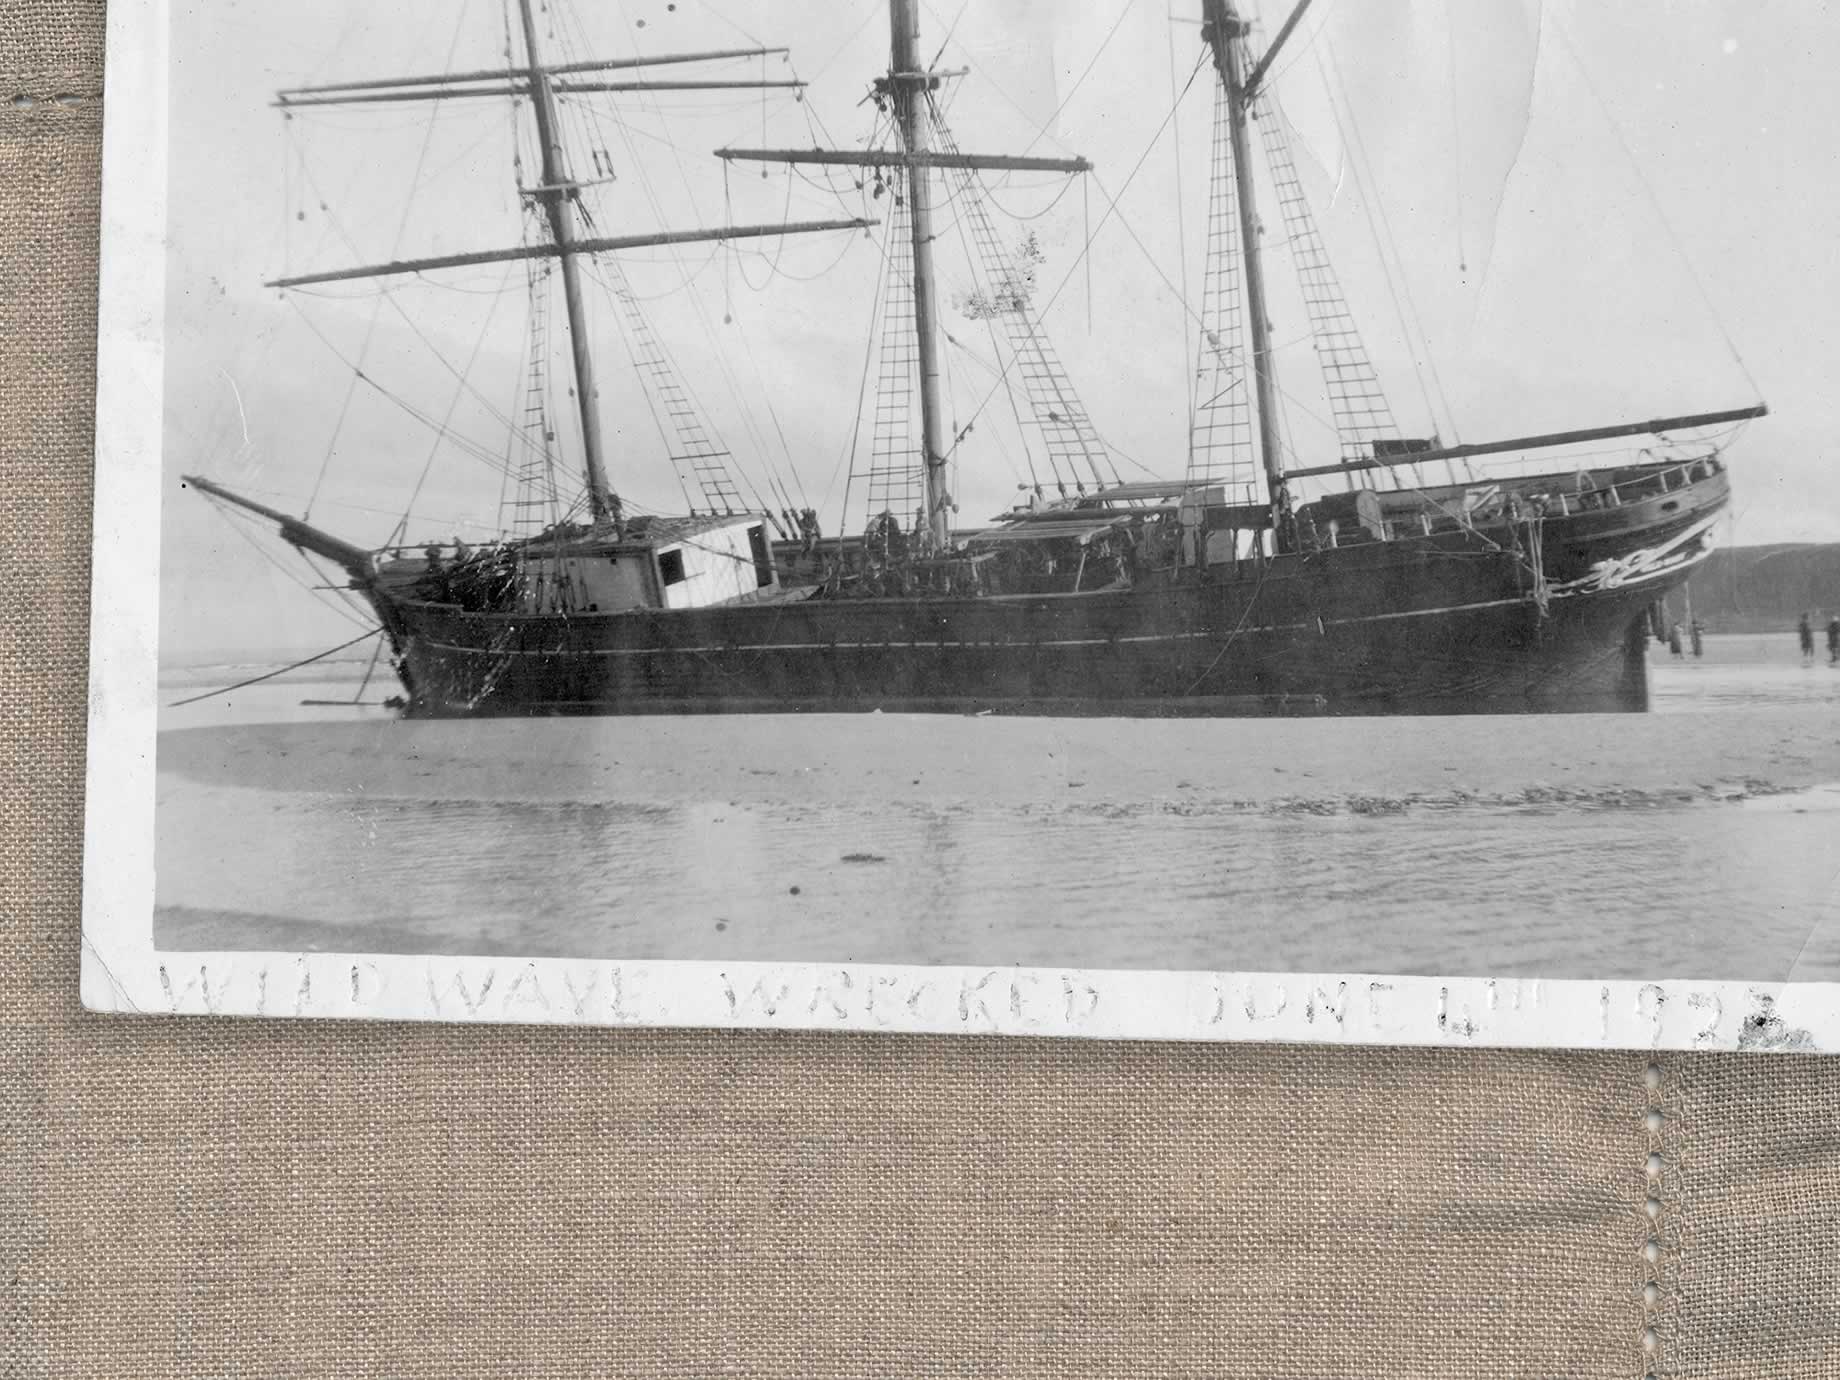 Das Wrack des Handelsschiffs „Wild Wave“ am Tatlow’s Beach, 4. Juni 1923